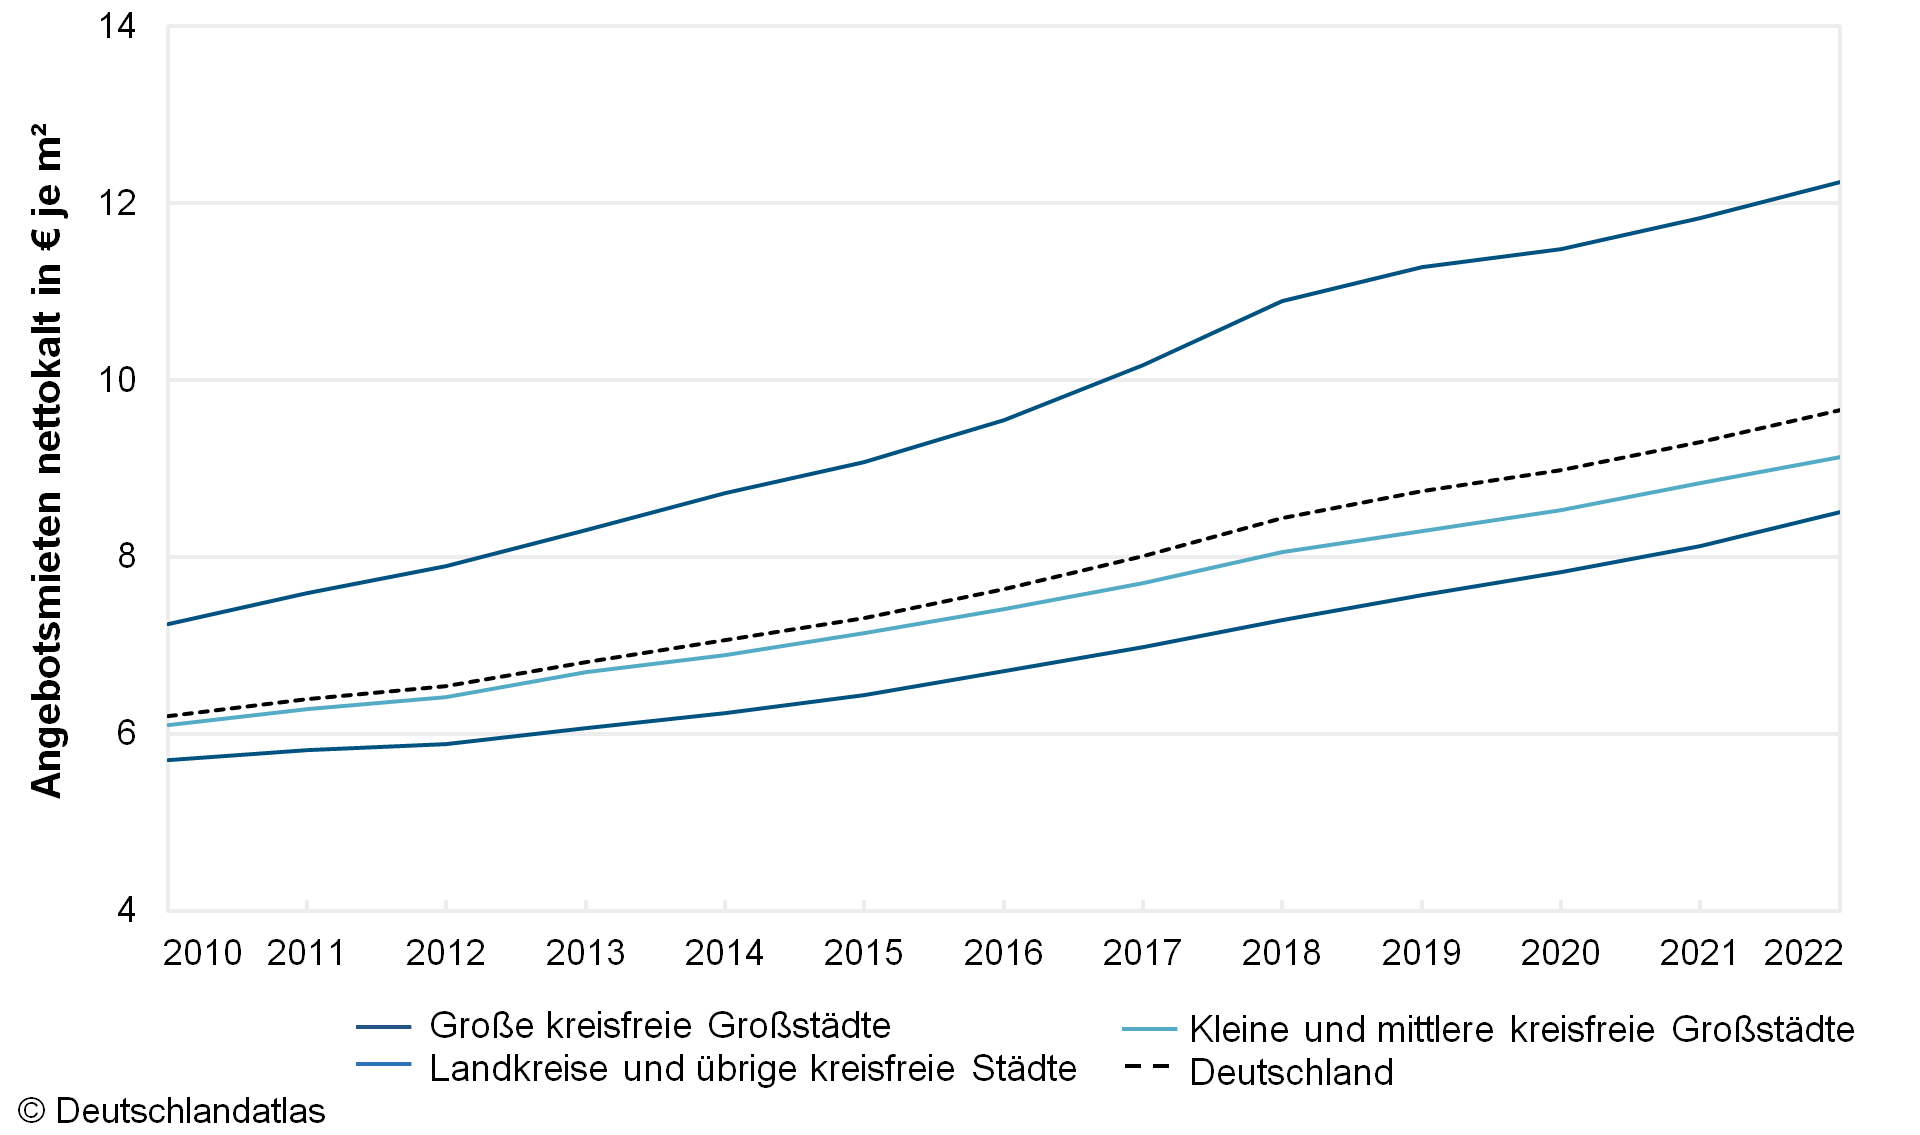 Angebotsmieten inserierter Wohnungen 2010 bis 2022 in den Kreisen und kreisfreien Städten